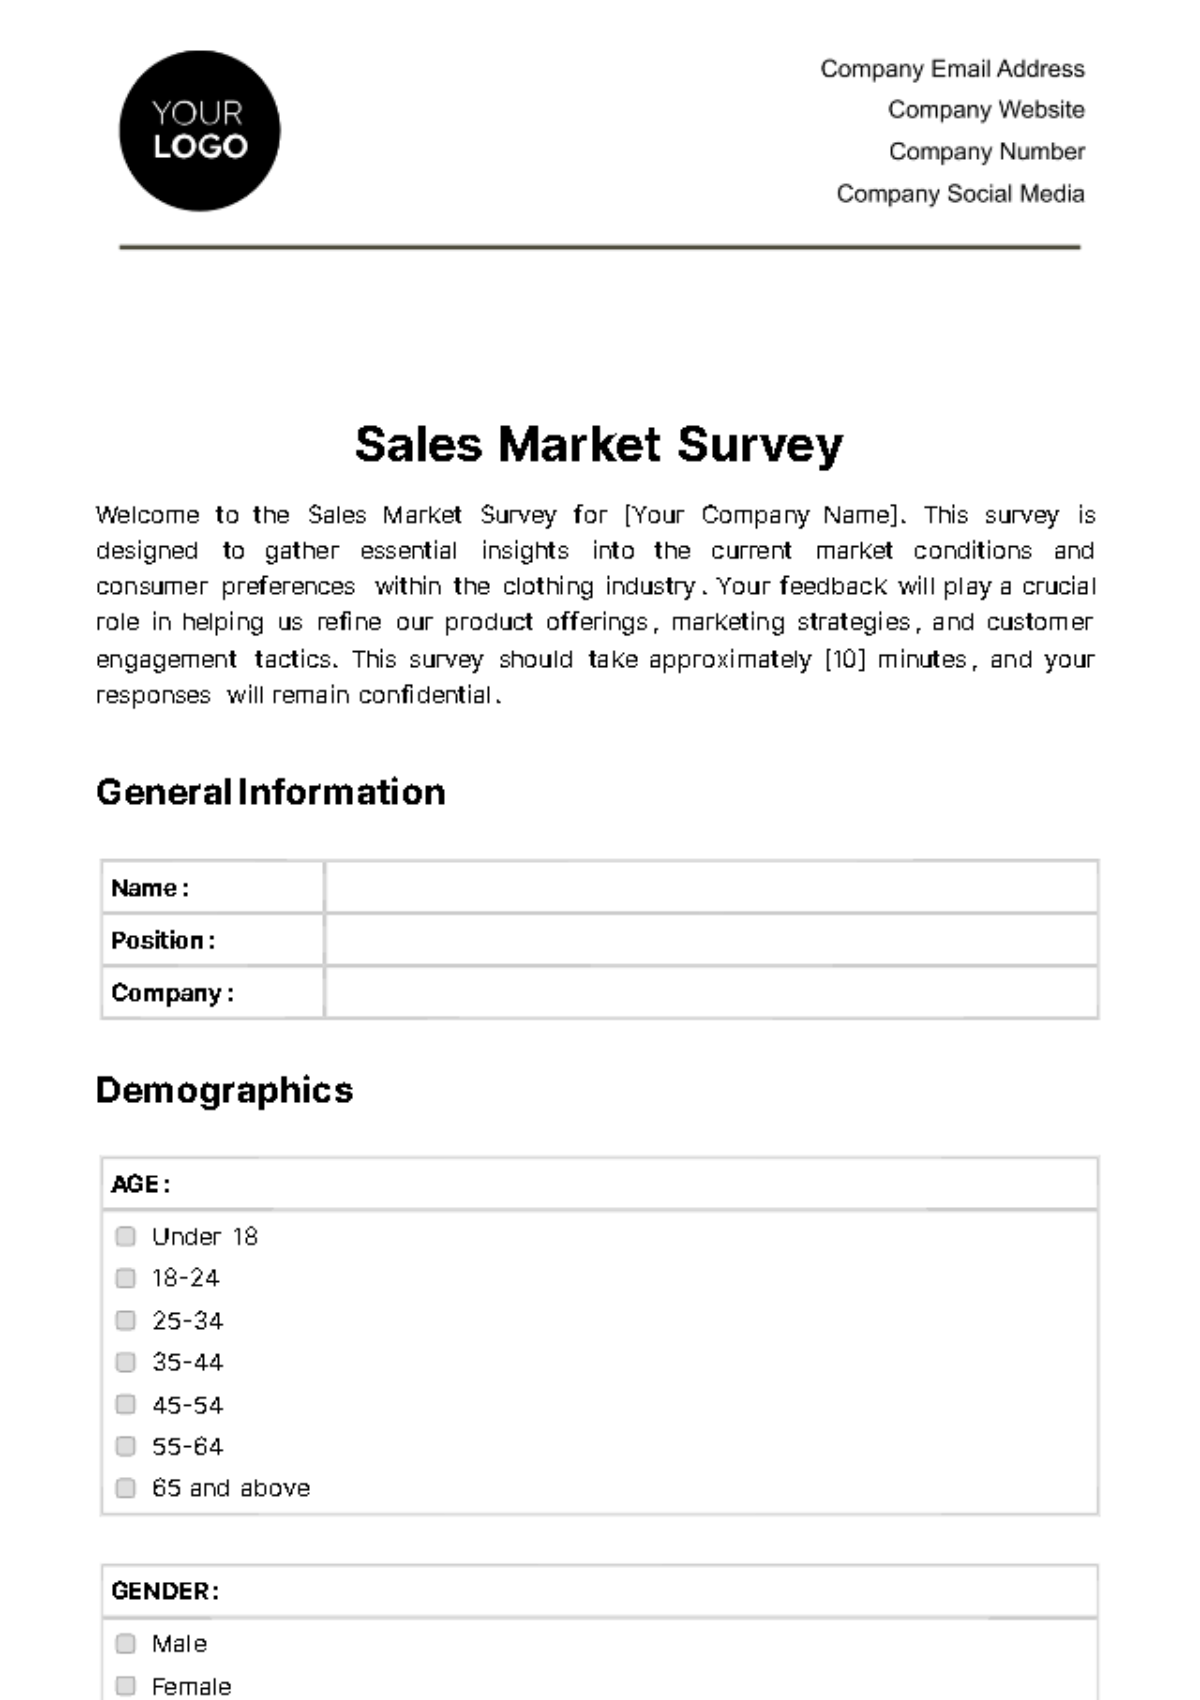 Sales Market Survey Template